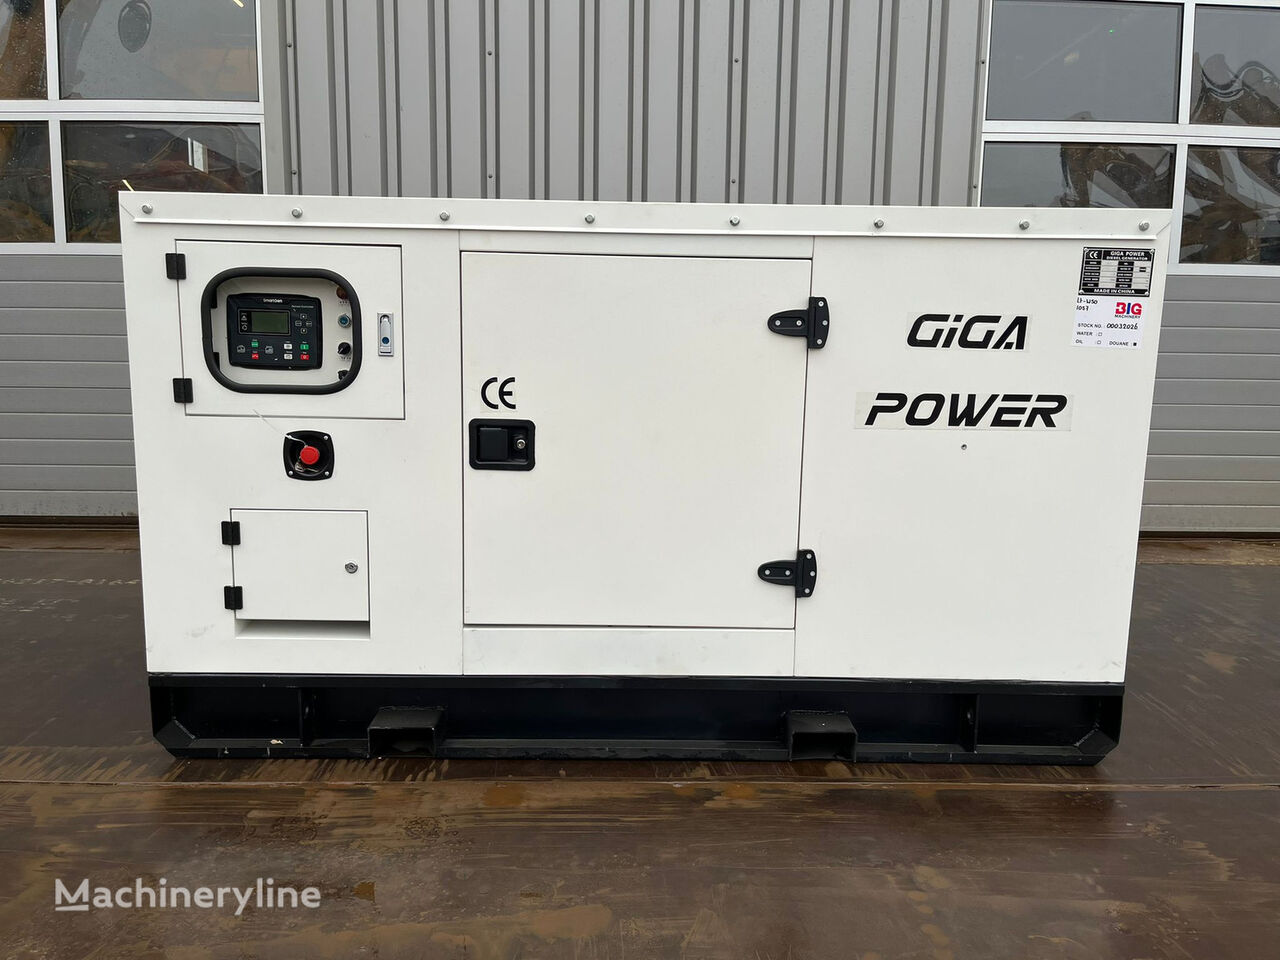 신품 디젤 발전기 Giga Power 62.5 KVA silent generator set - LT-W50-GF